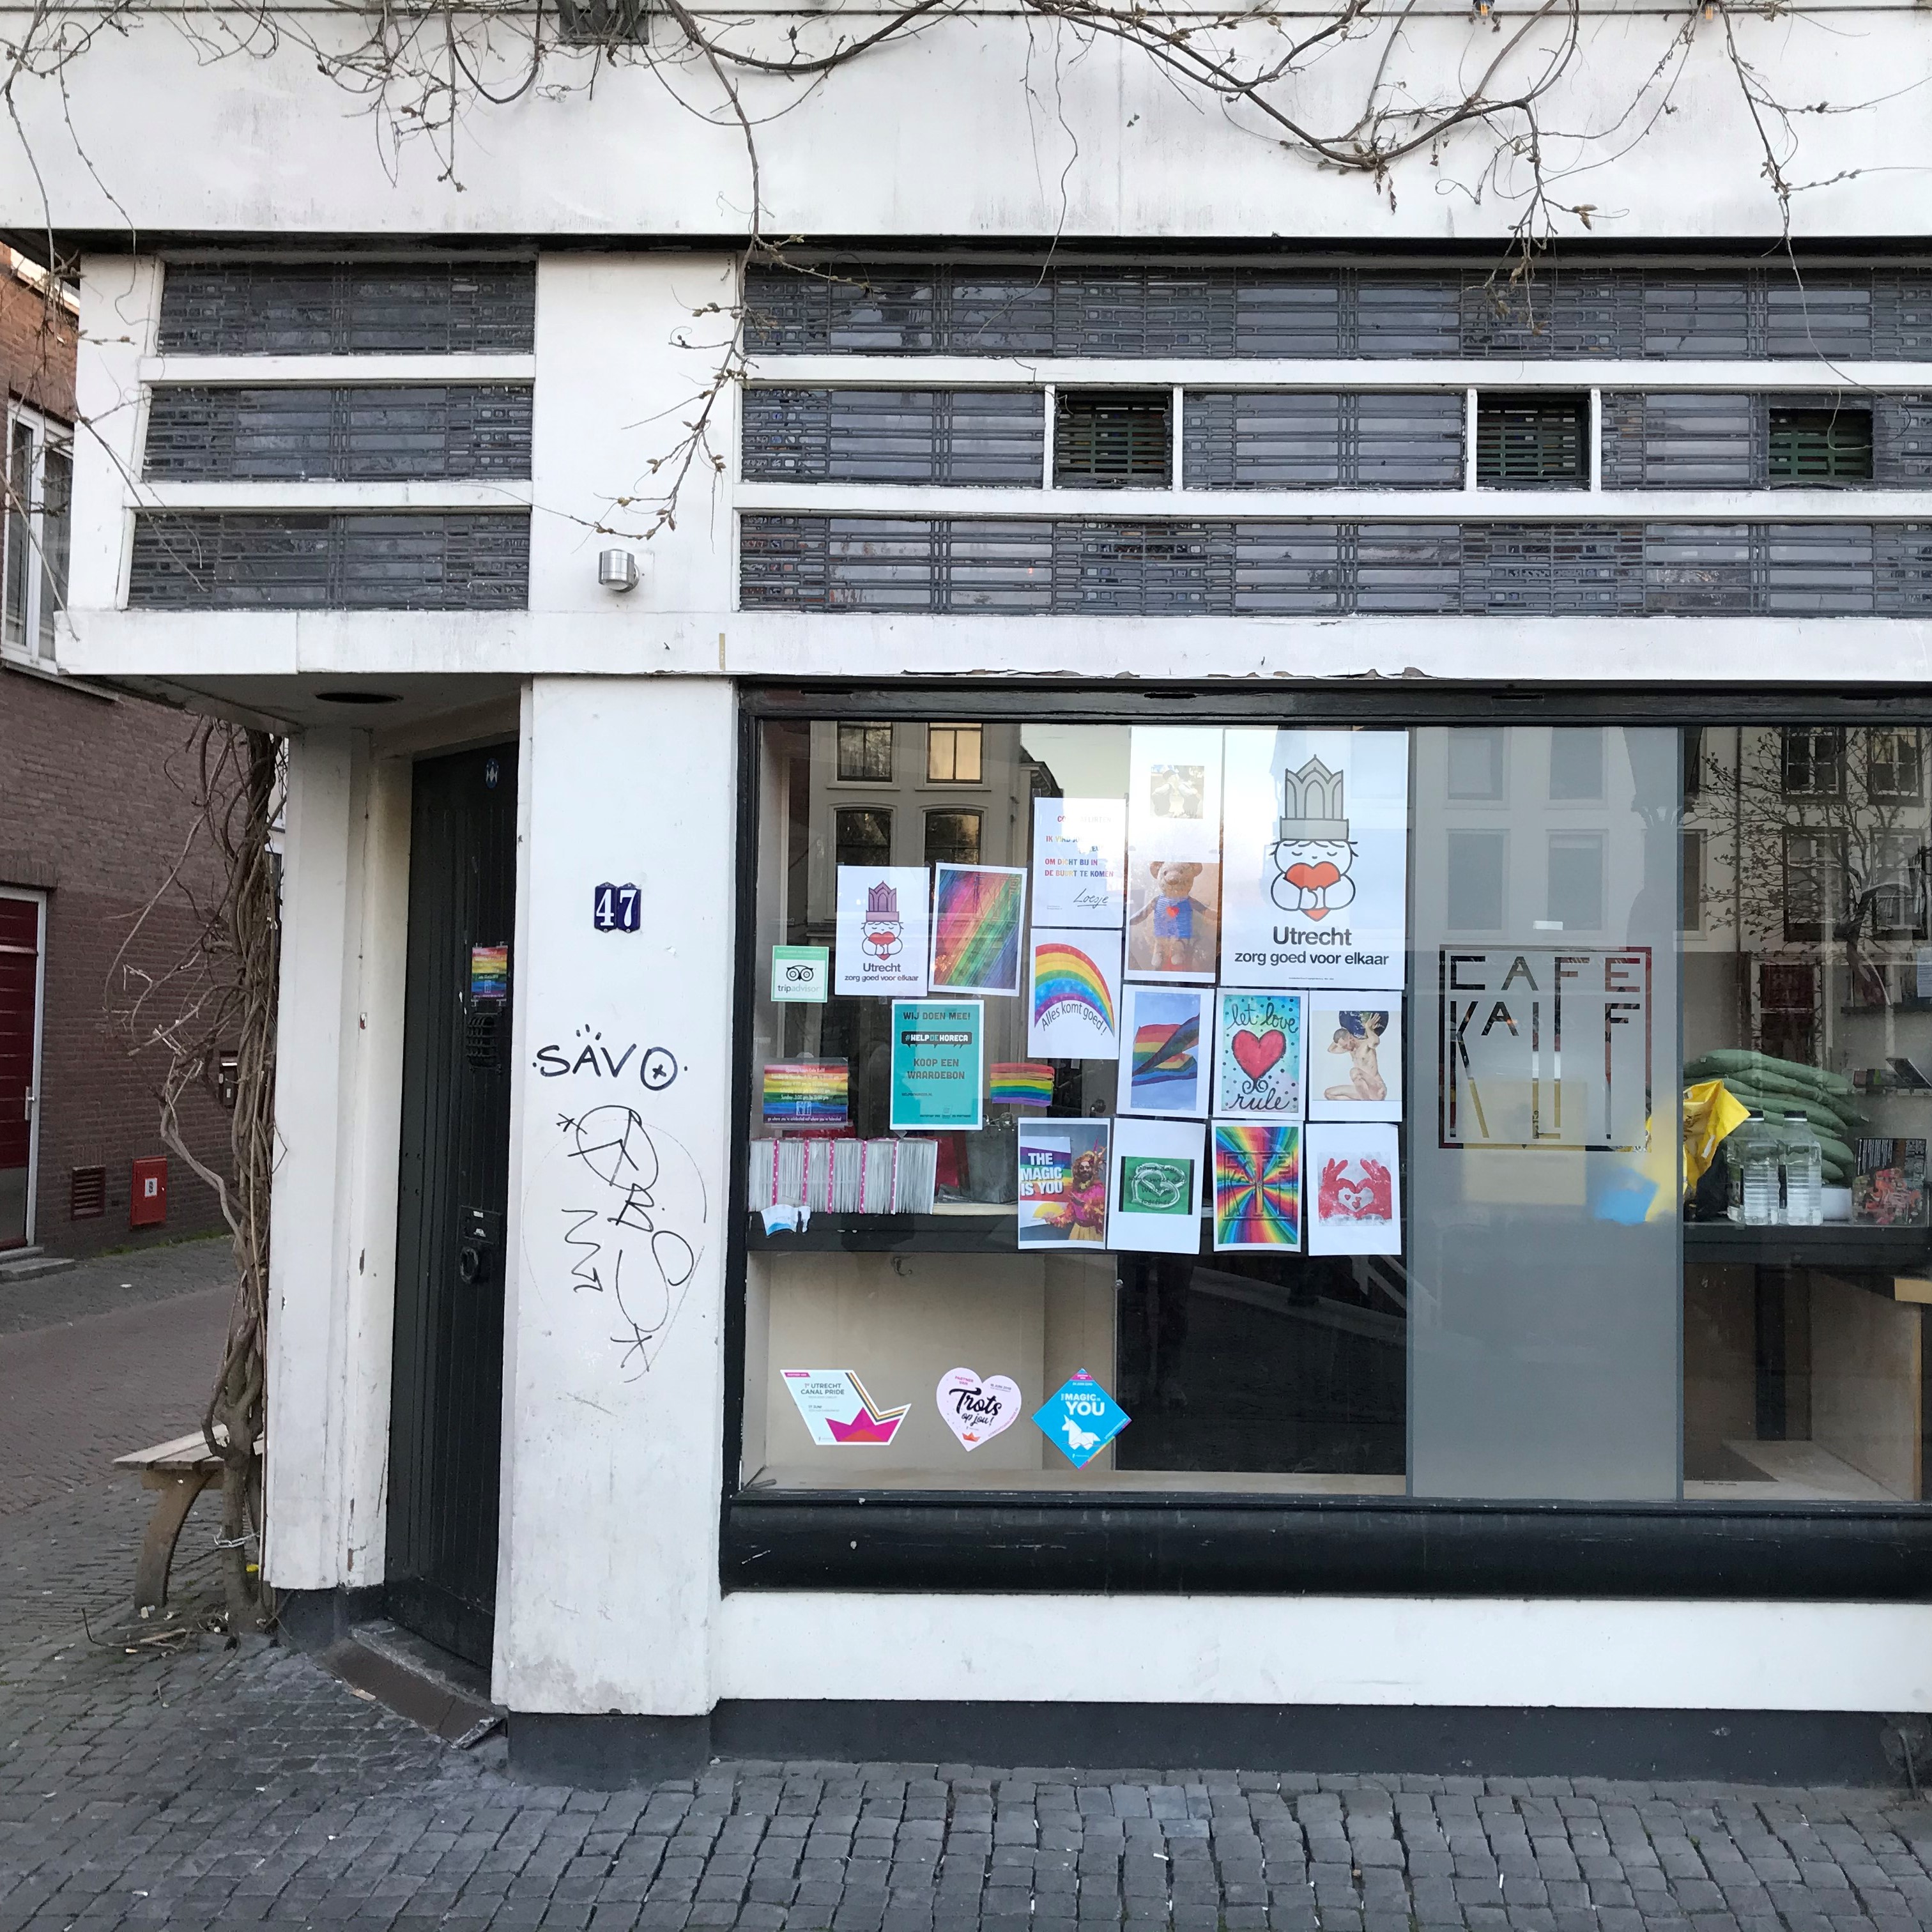 Etalage van Café Kalff met tekeningen om Utrechters een hart onder de riem te steken. P. Notermans, 4 april 2020. Coronacollectie HUA.